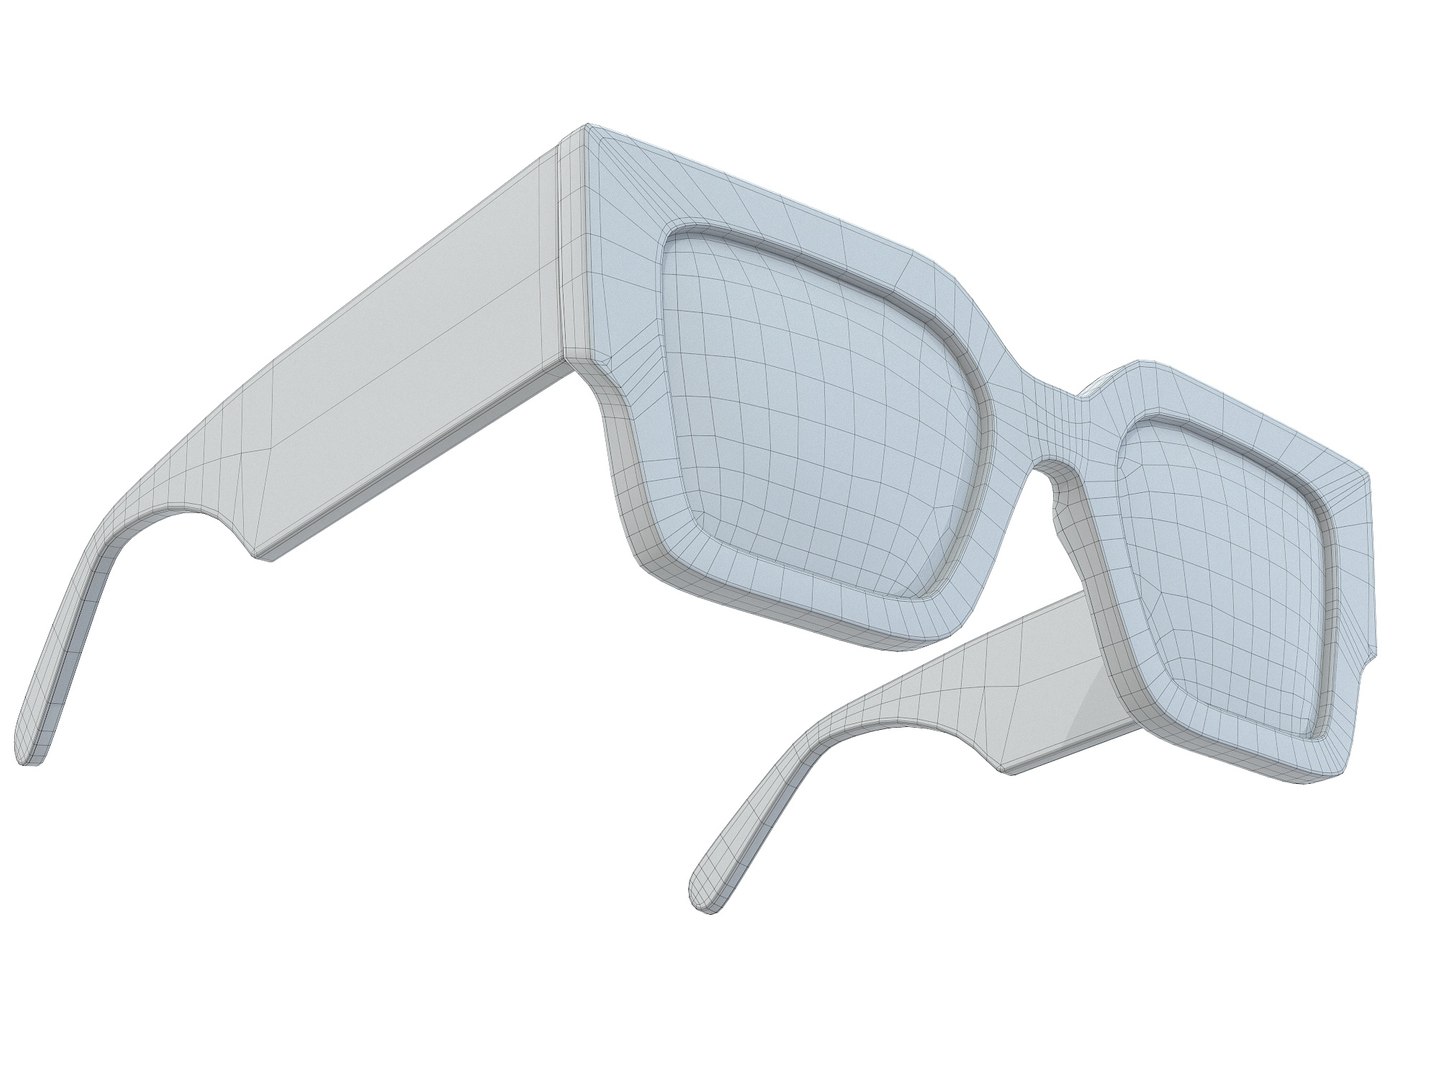 3D Off-White Catalina Sunglasses - TurboSquid 1951154